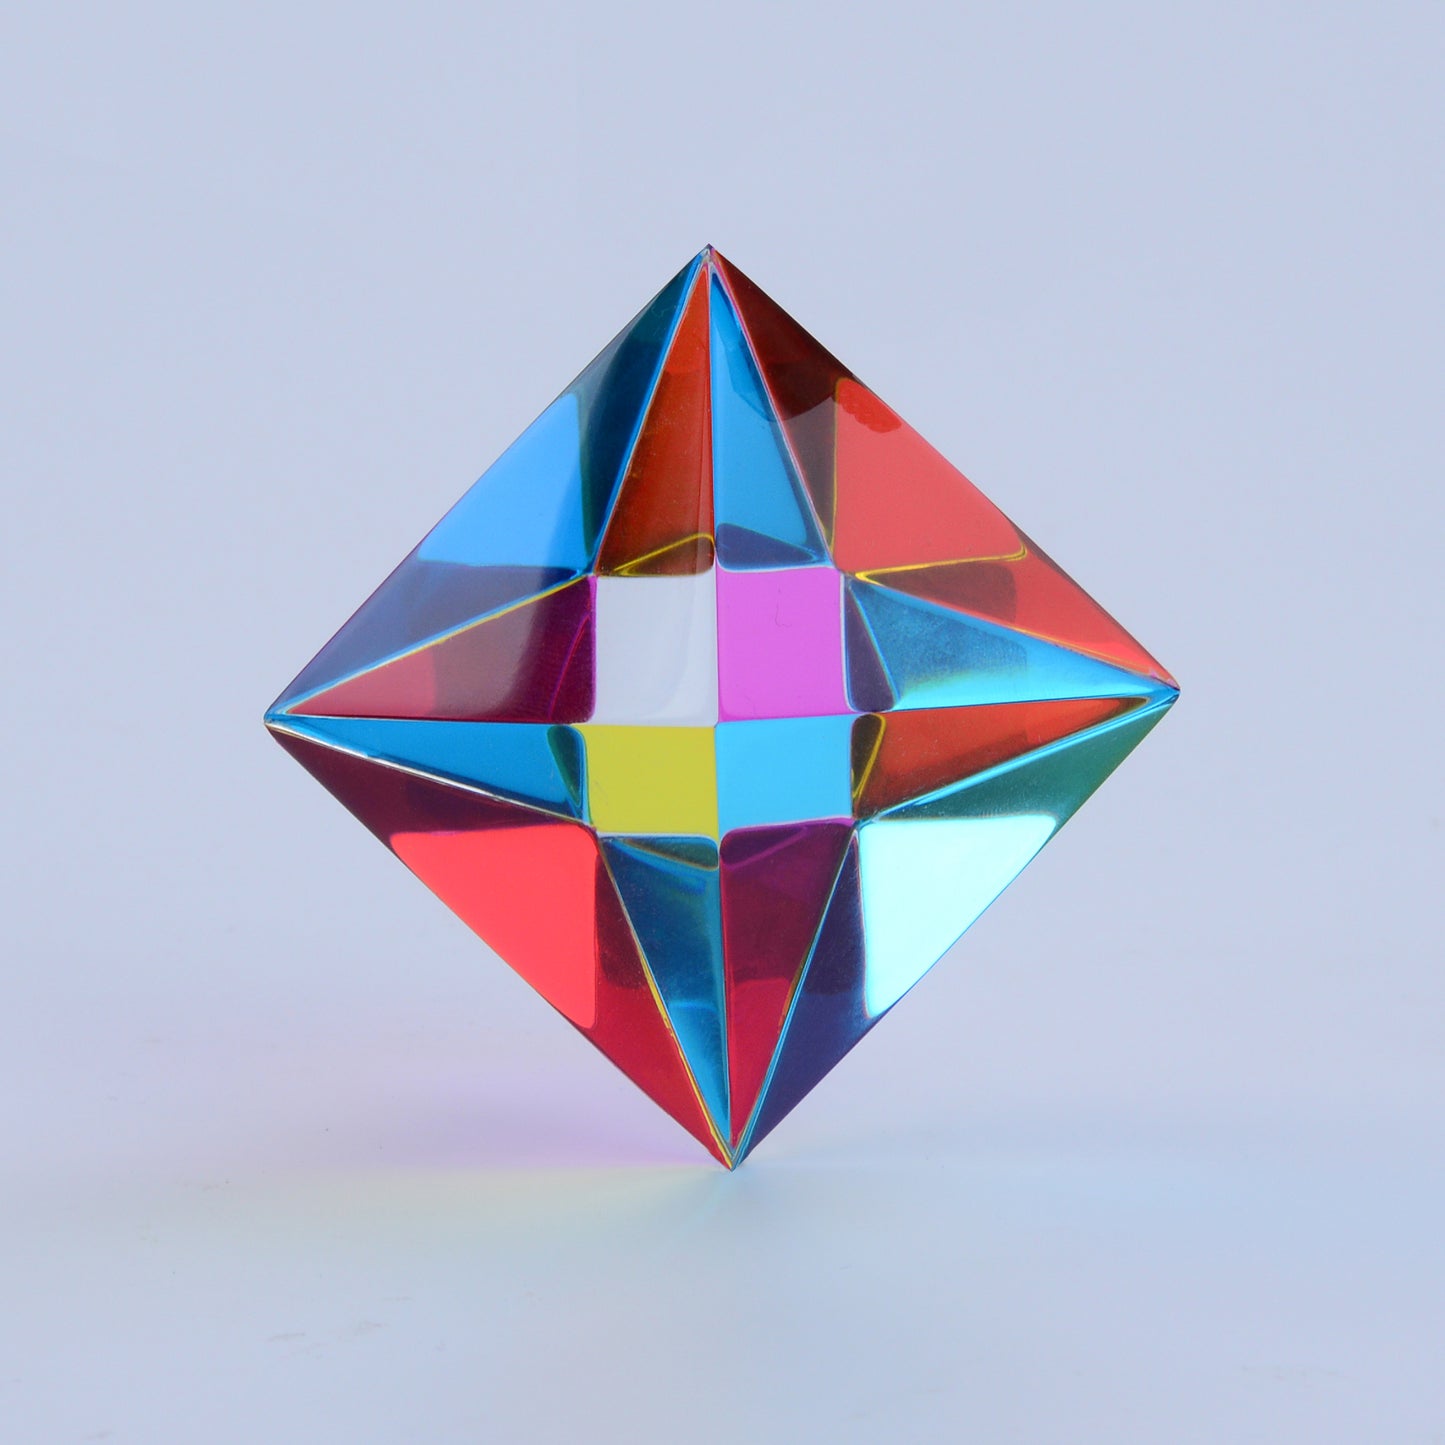 CMY OCTAHEDRON - CMY Cubes